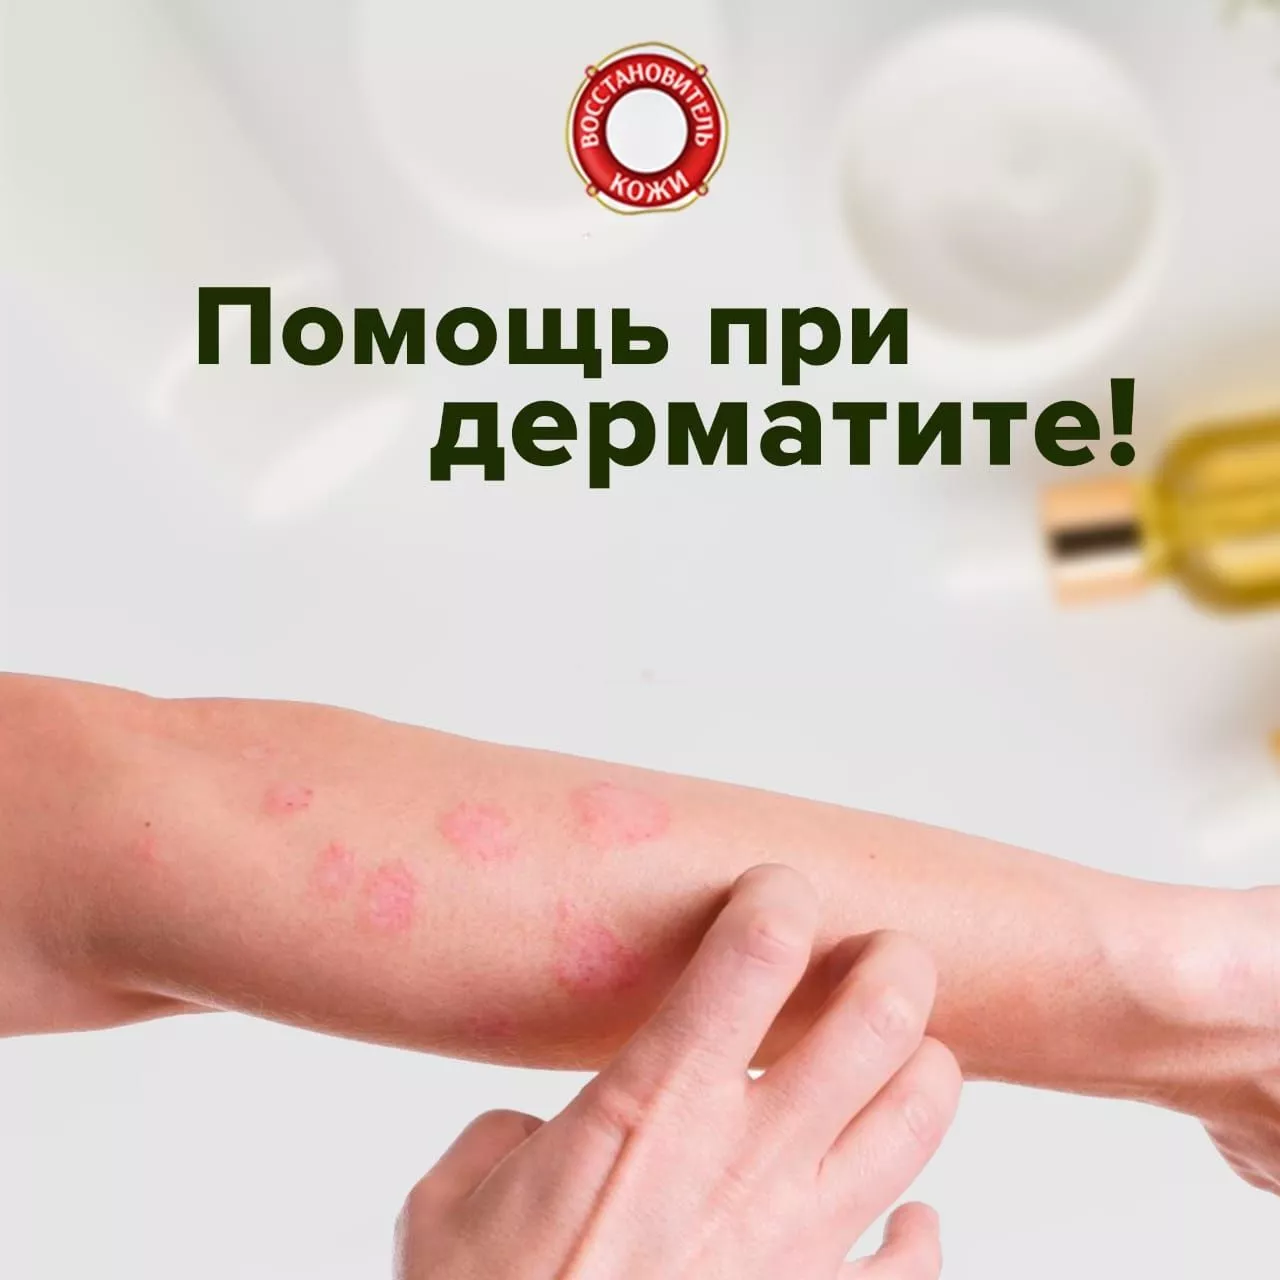 Помощь «Восстановитель кожи №1» при лечении дерматита